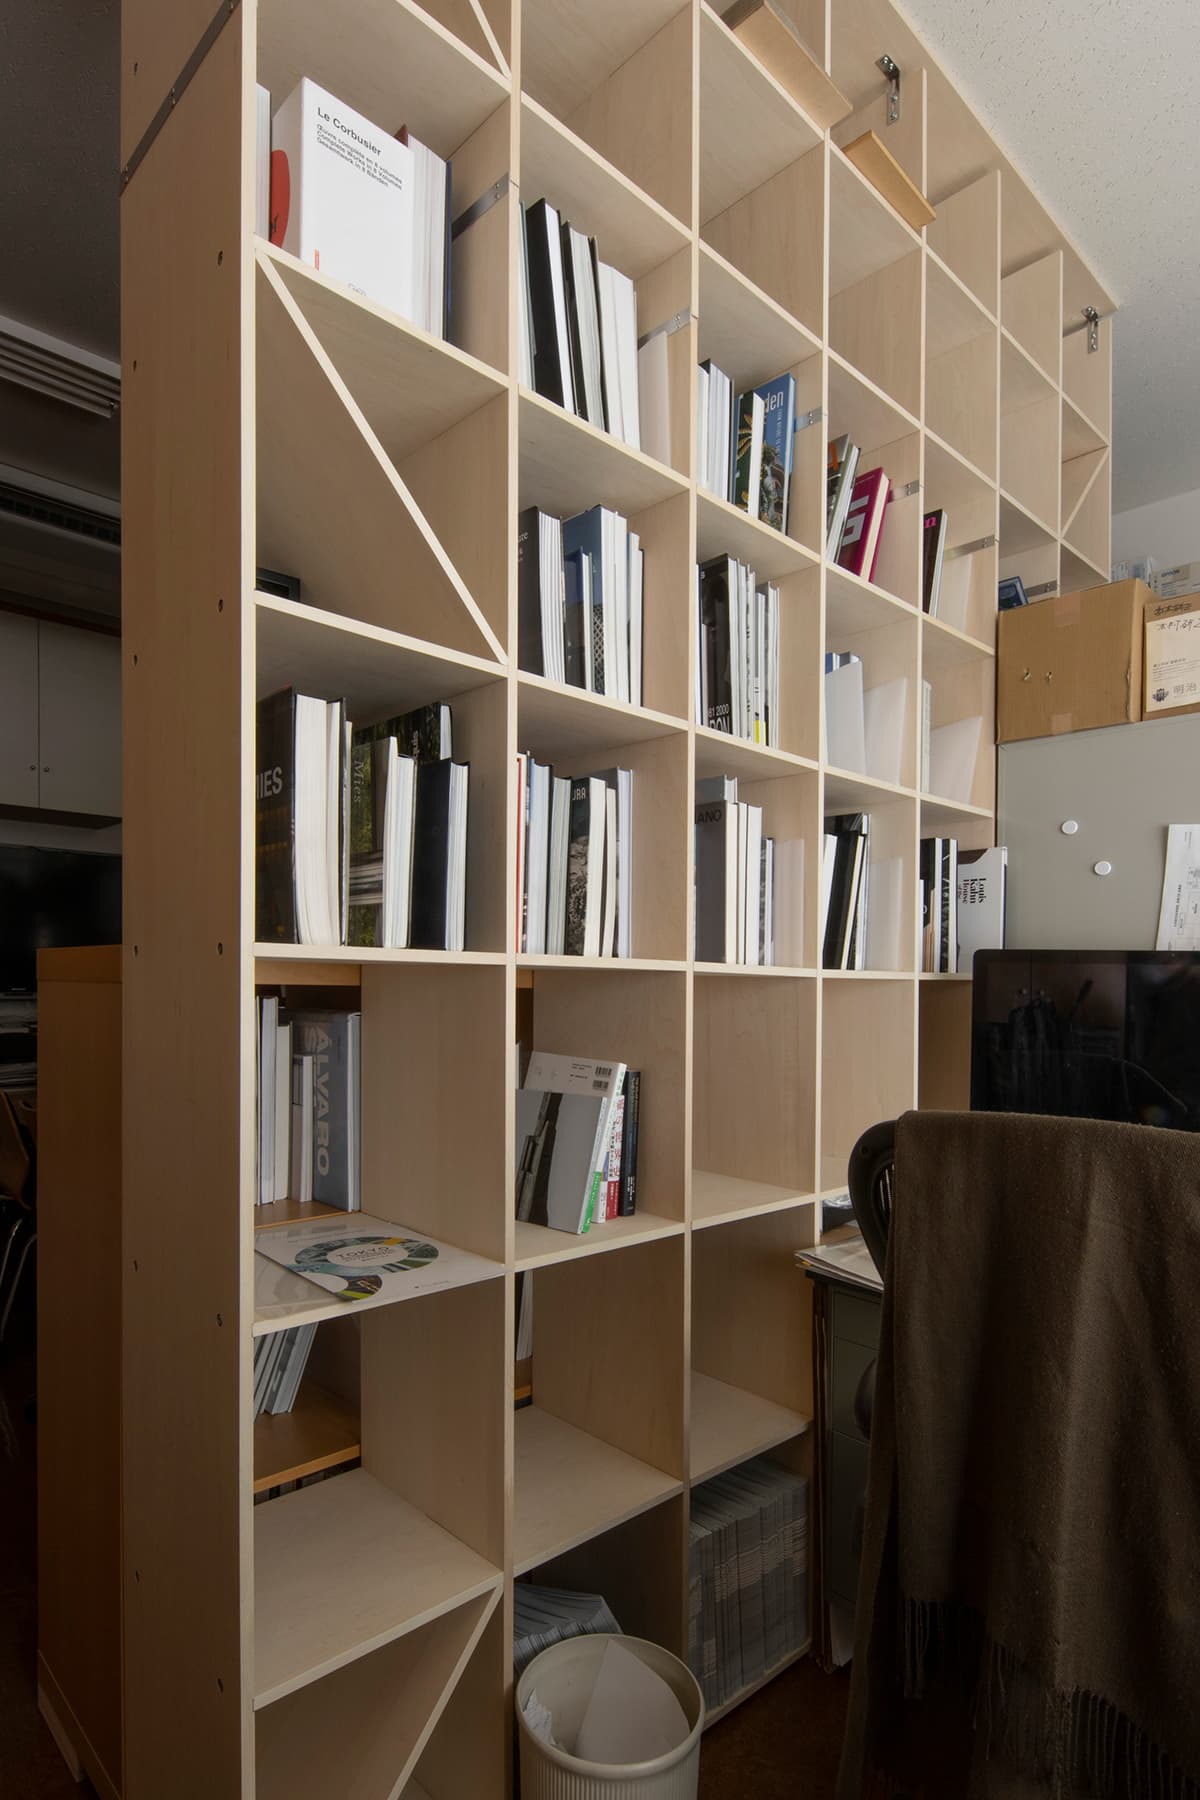 建築学科研究室の間仕切りを兼ねた本棚に - [TOPIX 18] 大学の研究室に